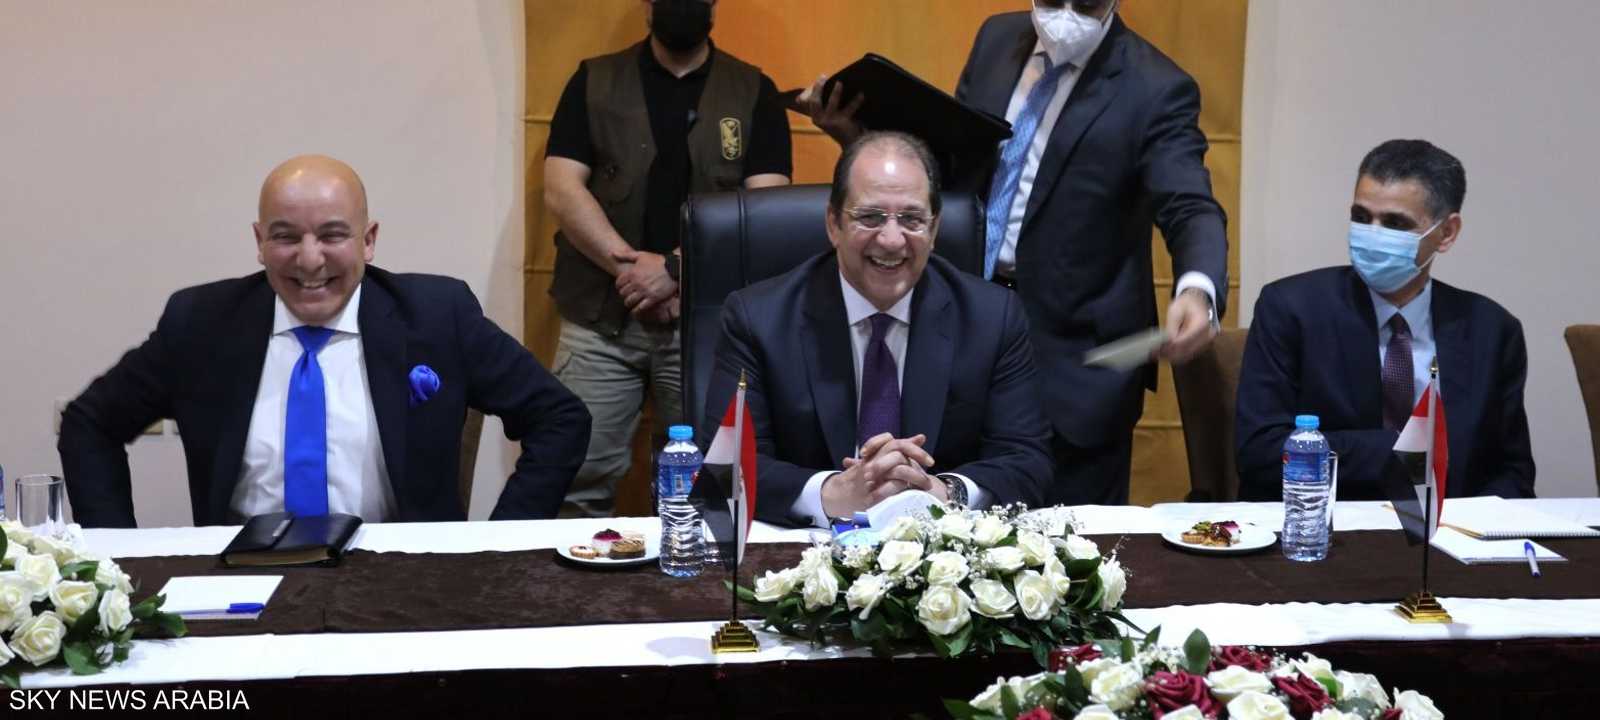 عباس كامل خلال لقائه مع القادة الفلسطينيين في غزة